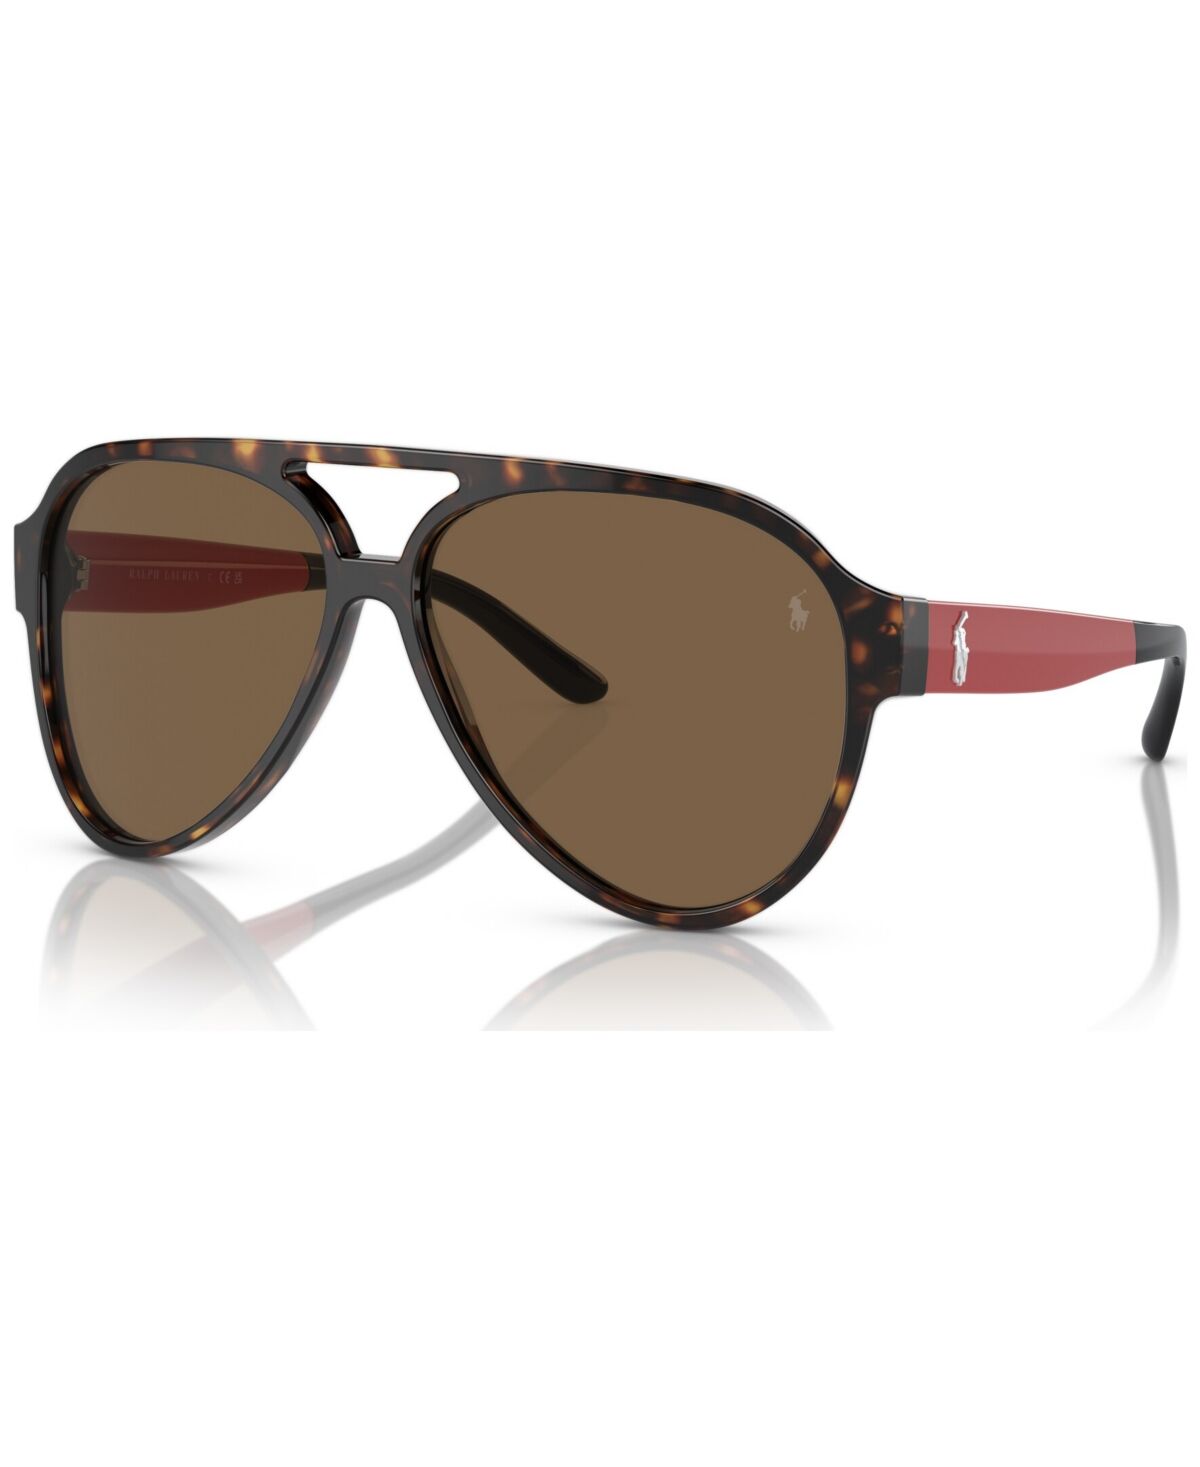 Ralph Lauren Polo Ralph Lauren Men's Sunglasses, PH4130 - Dark Havana